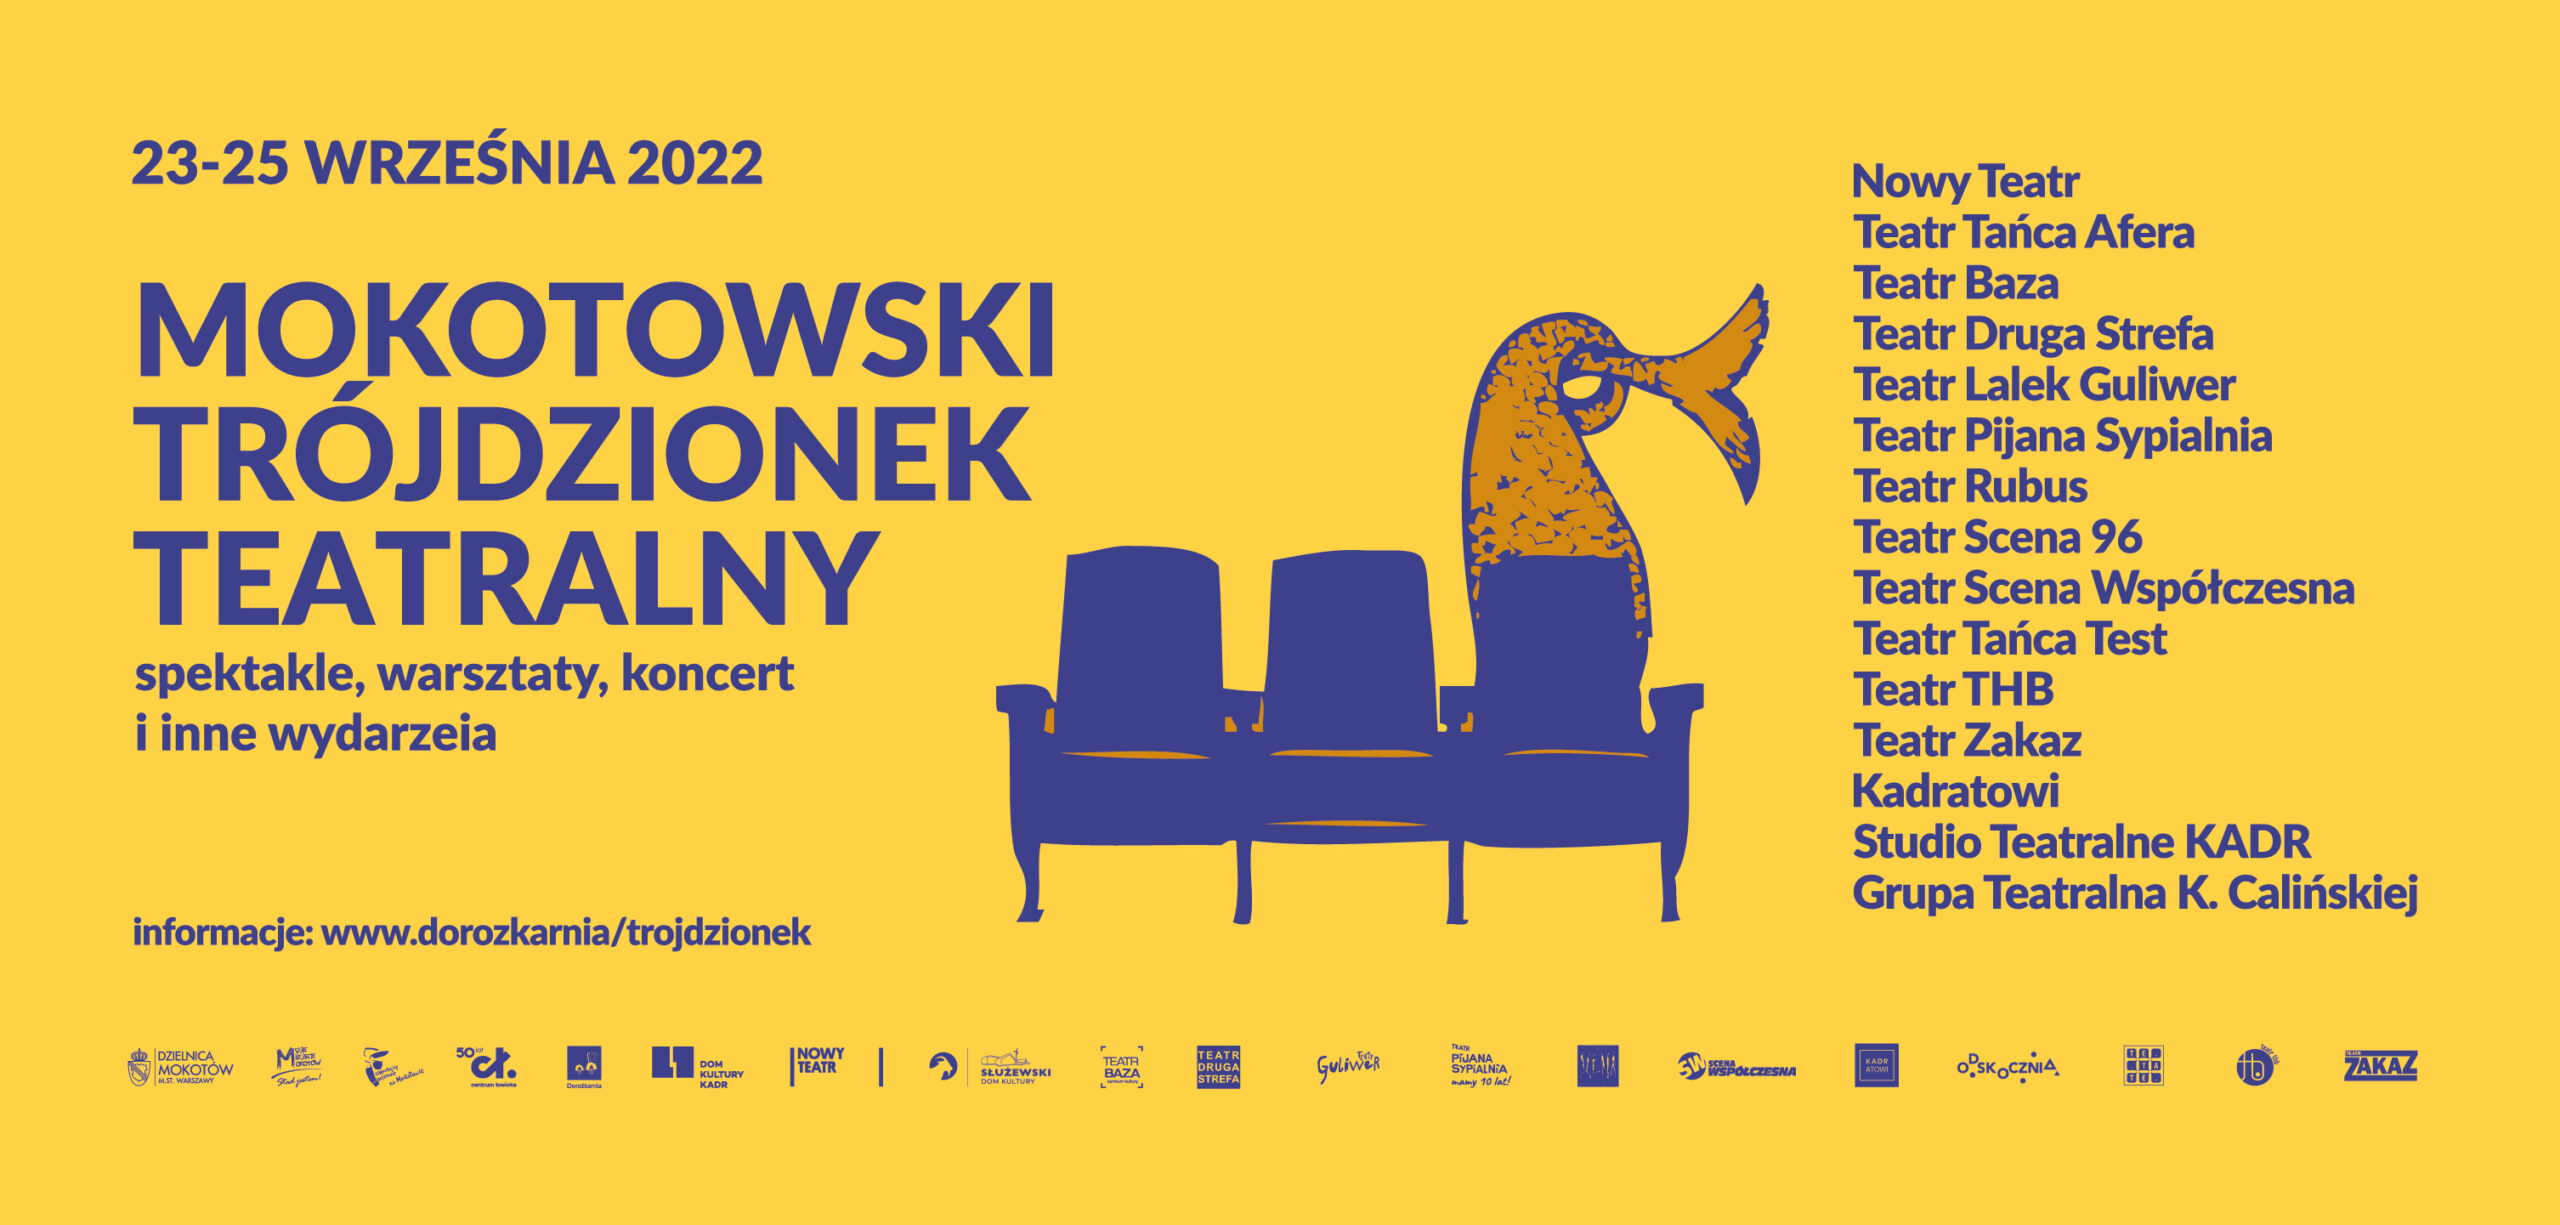 Grafika wydarzenia Mokotowski Trójdzionek Teatralny - podany termin, wymienione teatry, w dolnym pasku logotypy. W centralnym miejscu grafika - trzy fotele, na jednym syreni ogon